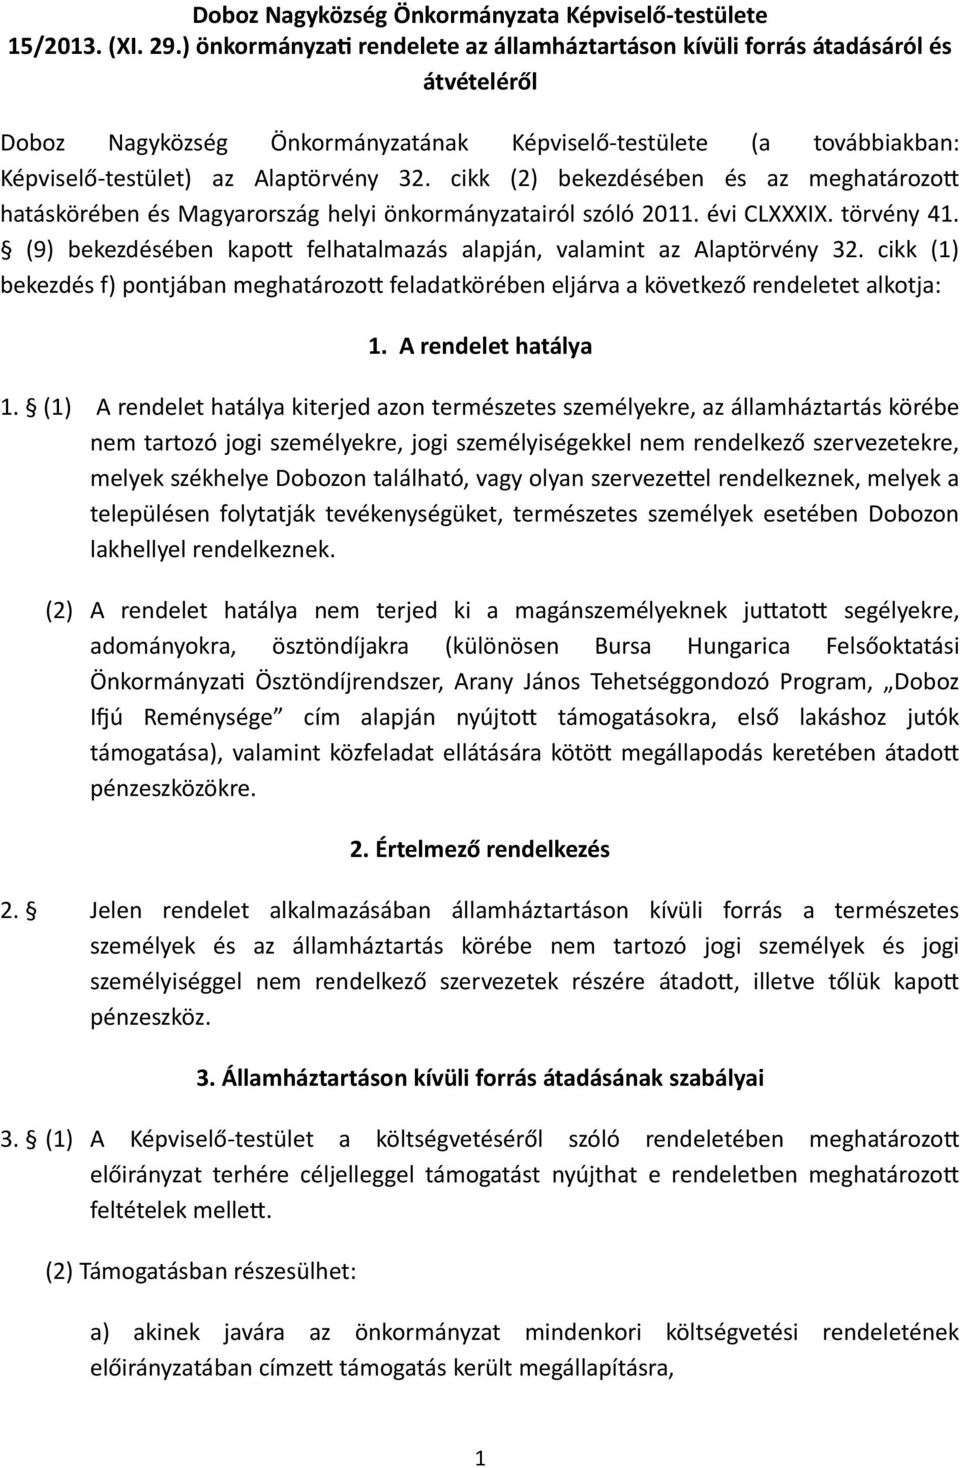 cikk (2) bekezdésében és az meghatározot hatáskörében és Magyarország helyi önkormányzatairól szóló 2011. évi CLXXXIX. törvény 41.